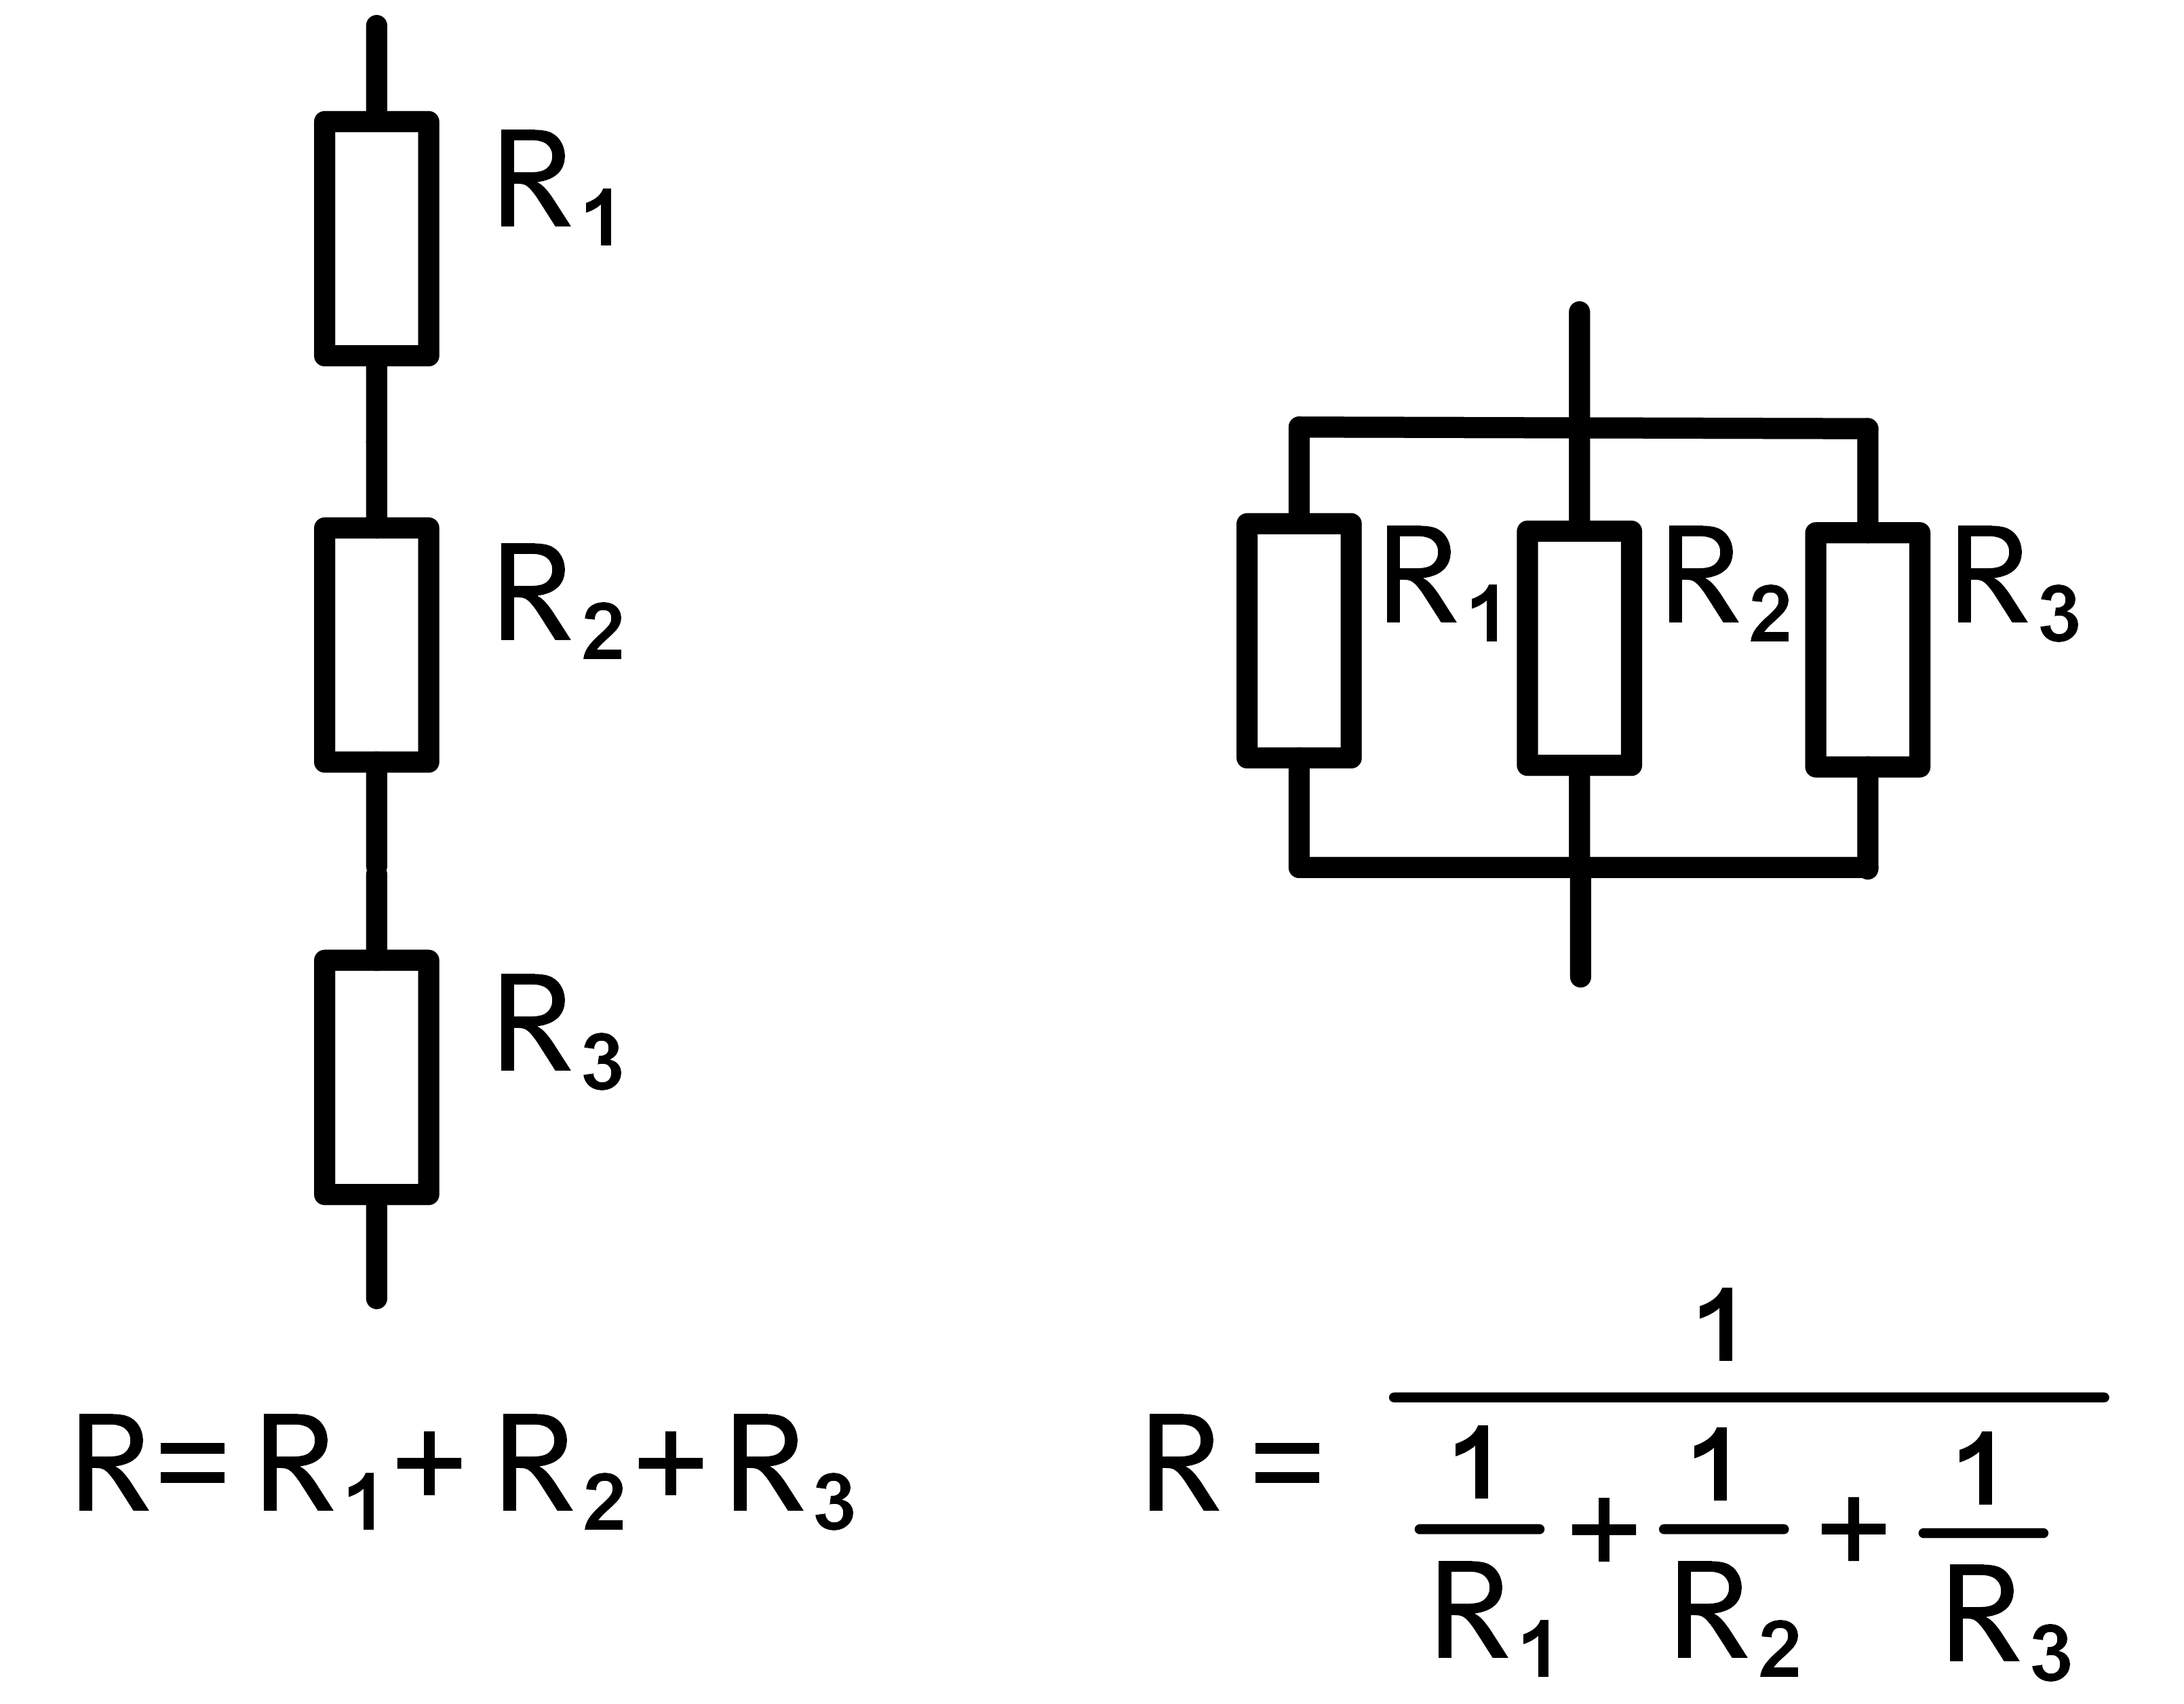 Последовательное соединение трех резисторов. Параллельное соединение резисторов схема. Электротехника последовательное соединение резисторов. Схема последовательного соединения трех резисторов. Параллельное соединение 3 резисторов.